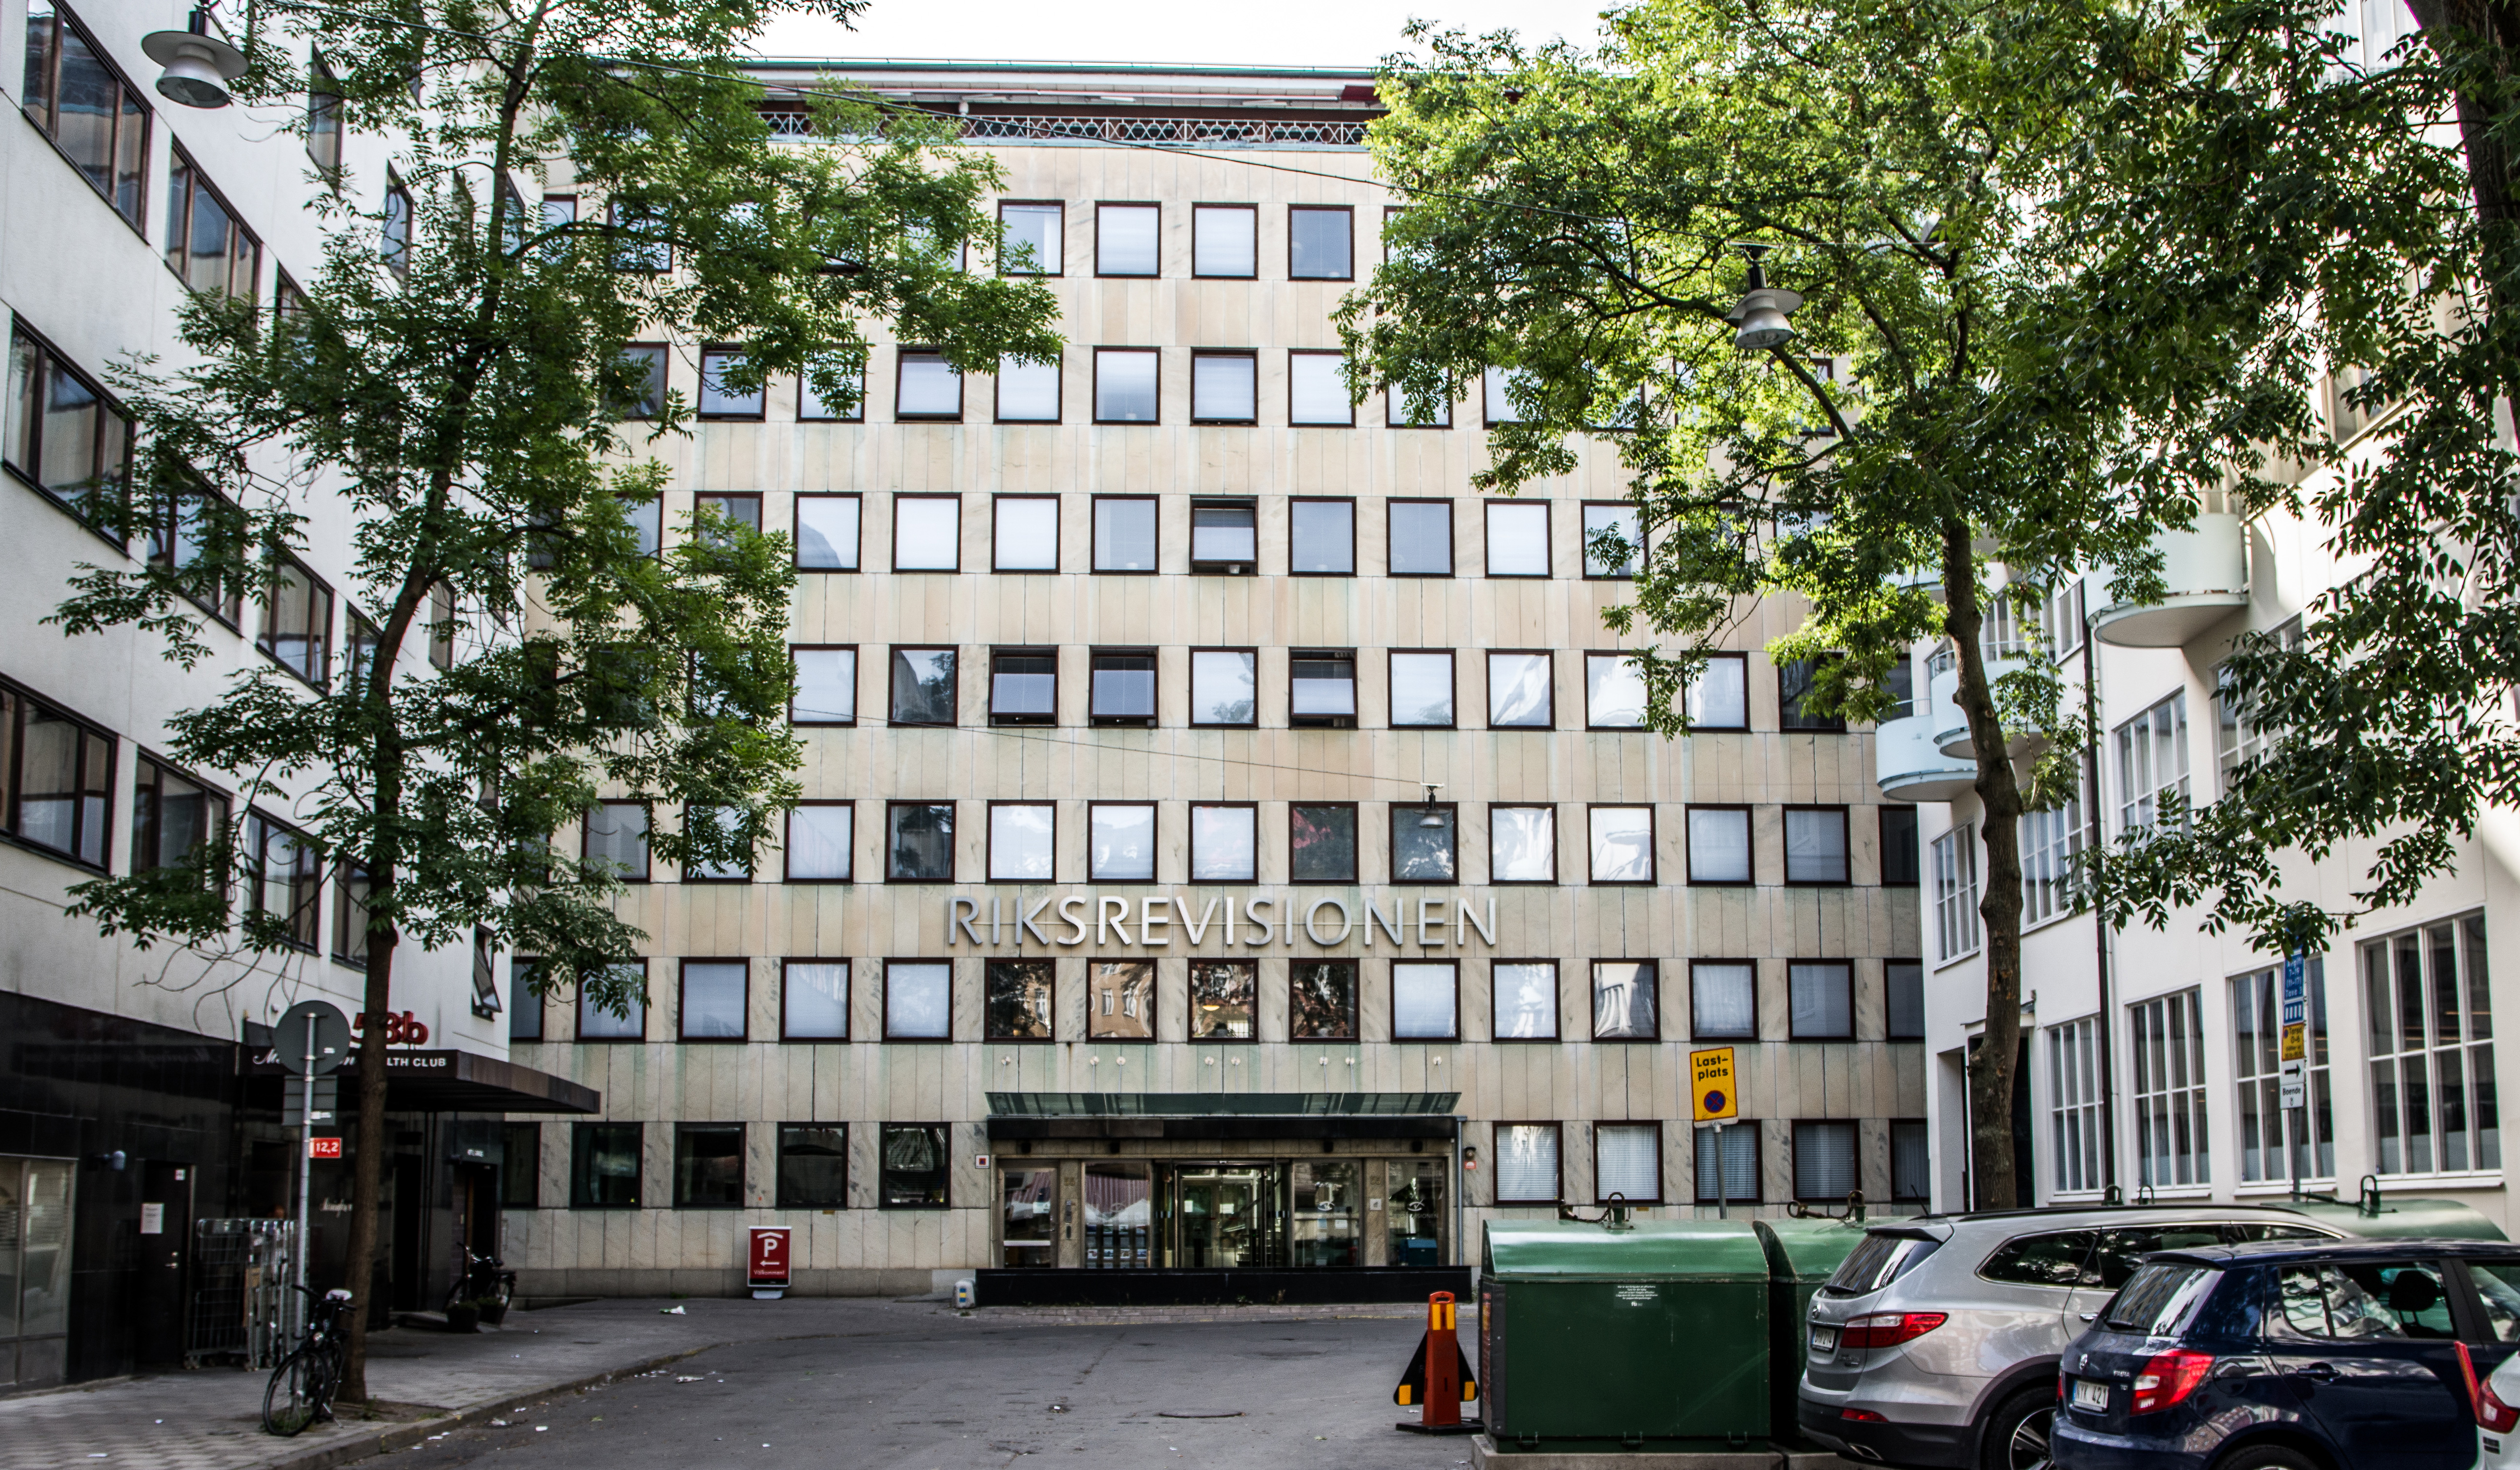 Riksrevisionen lämnar sitt kontor på Östermalm i Stockholm 17 augusti. På grund av coronan är det osäkert när personalen följer efter.